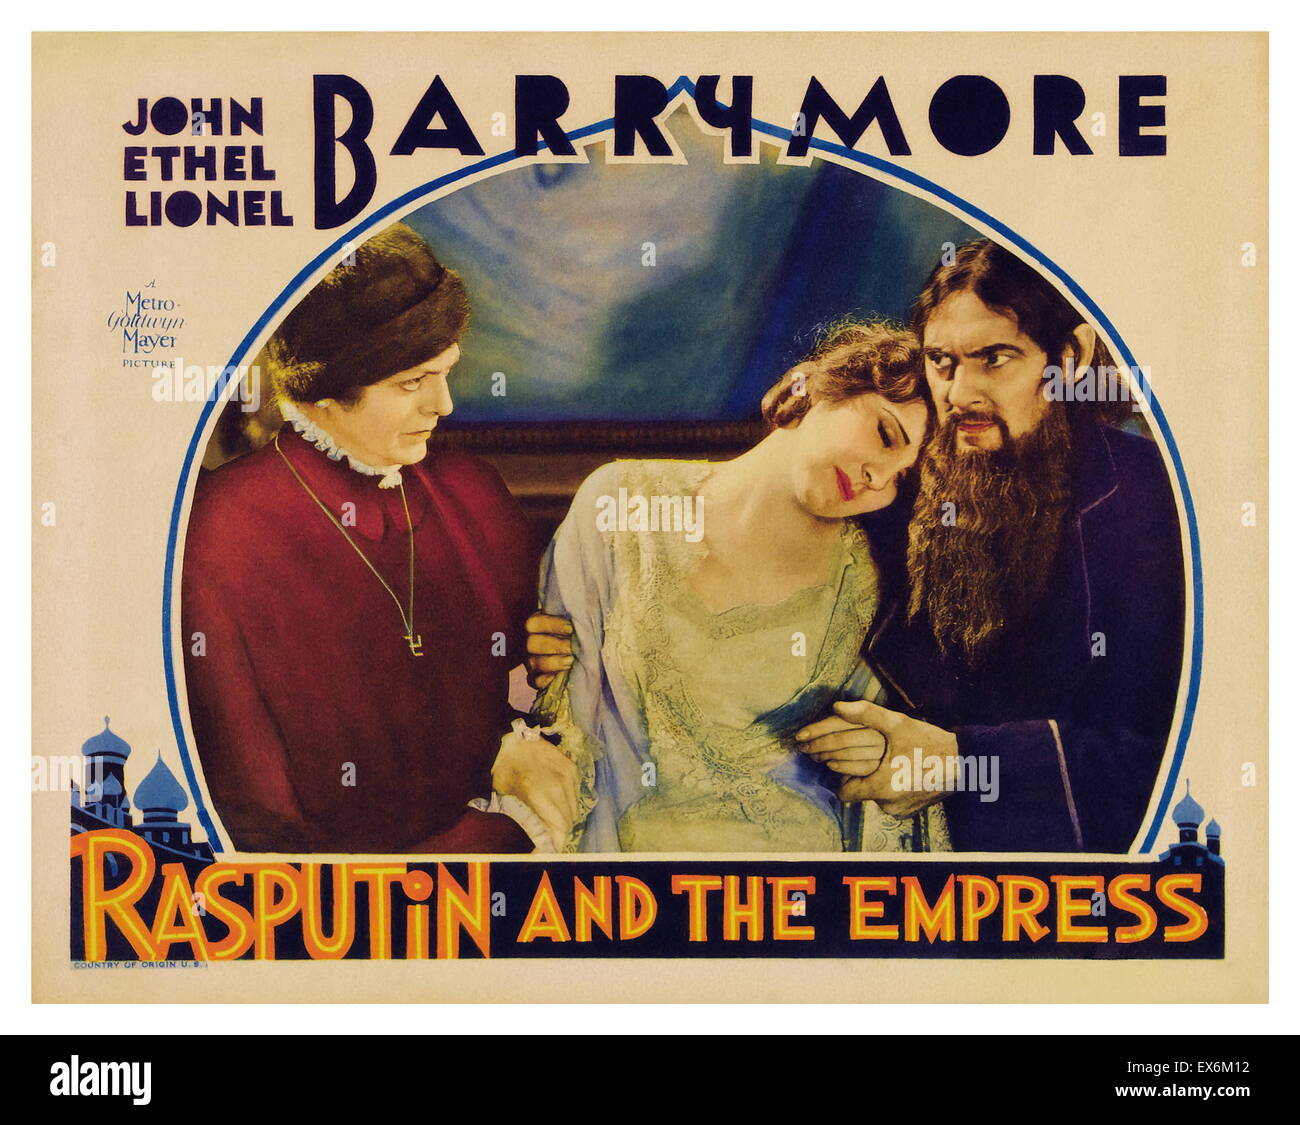 Rasputin e l'Imperatrice è una pellicola 1932 circa Russia imperiale con protagonista il Barrymore fratelli (Giovanni, come principe Chegodieff; Ethel, come Czarina Alexandra; e Lionel Barrymore, come Grigori Rasputin). È il solo film in cui tutti i tre fratelli appaiono toge Foto Stock